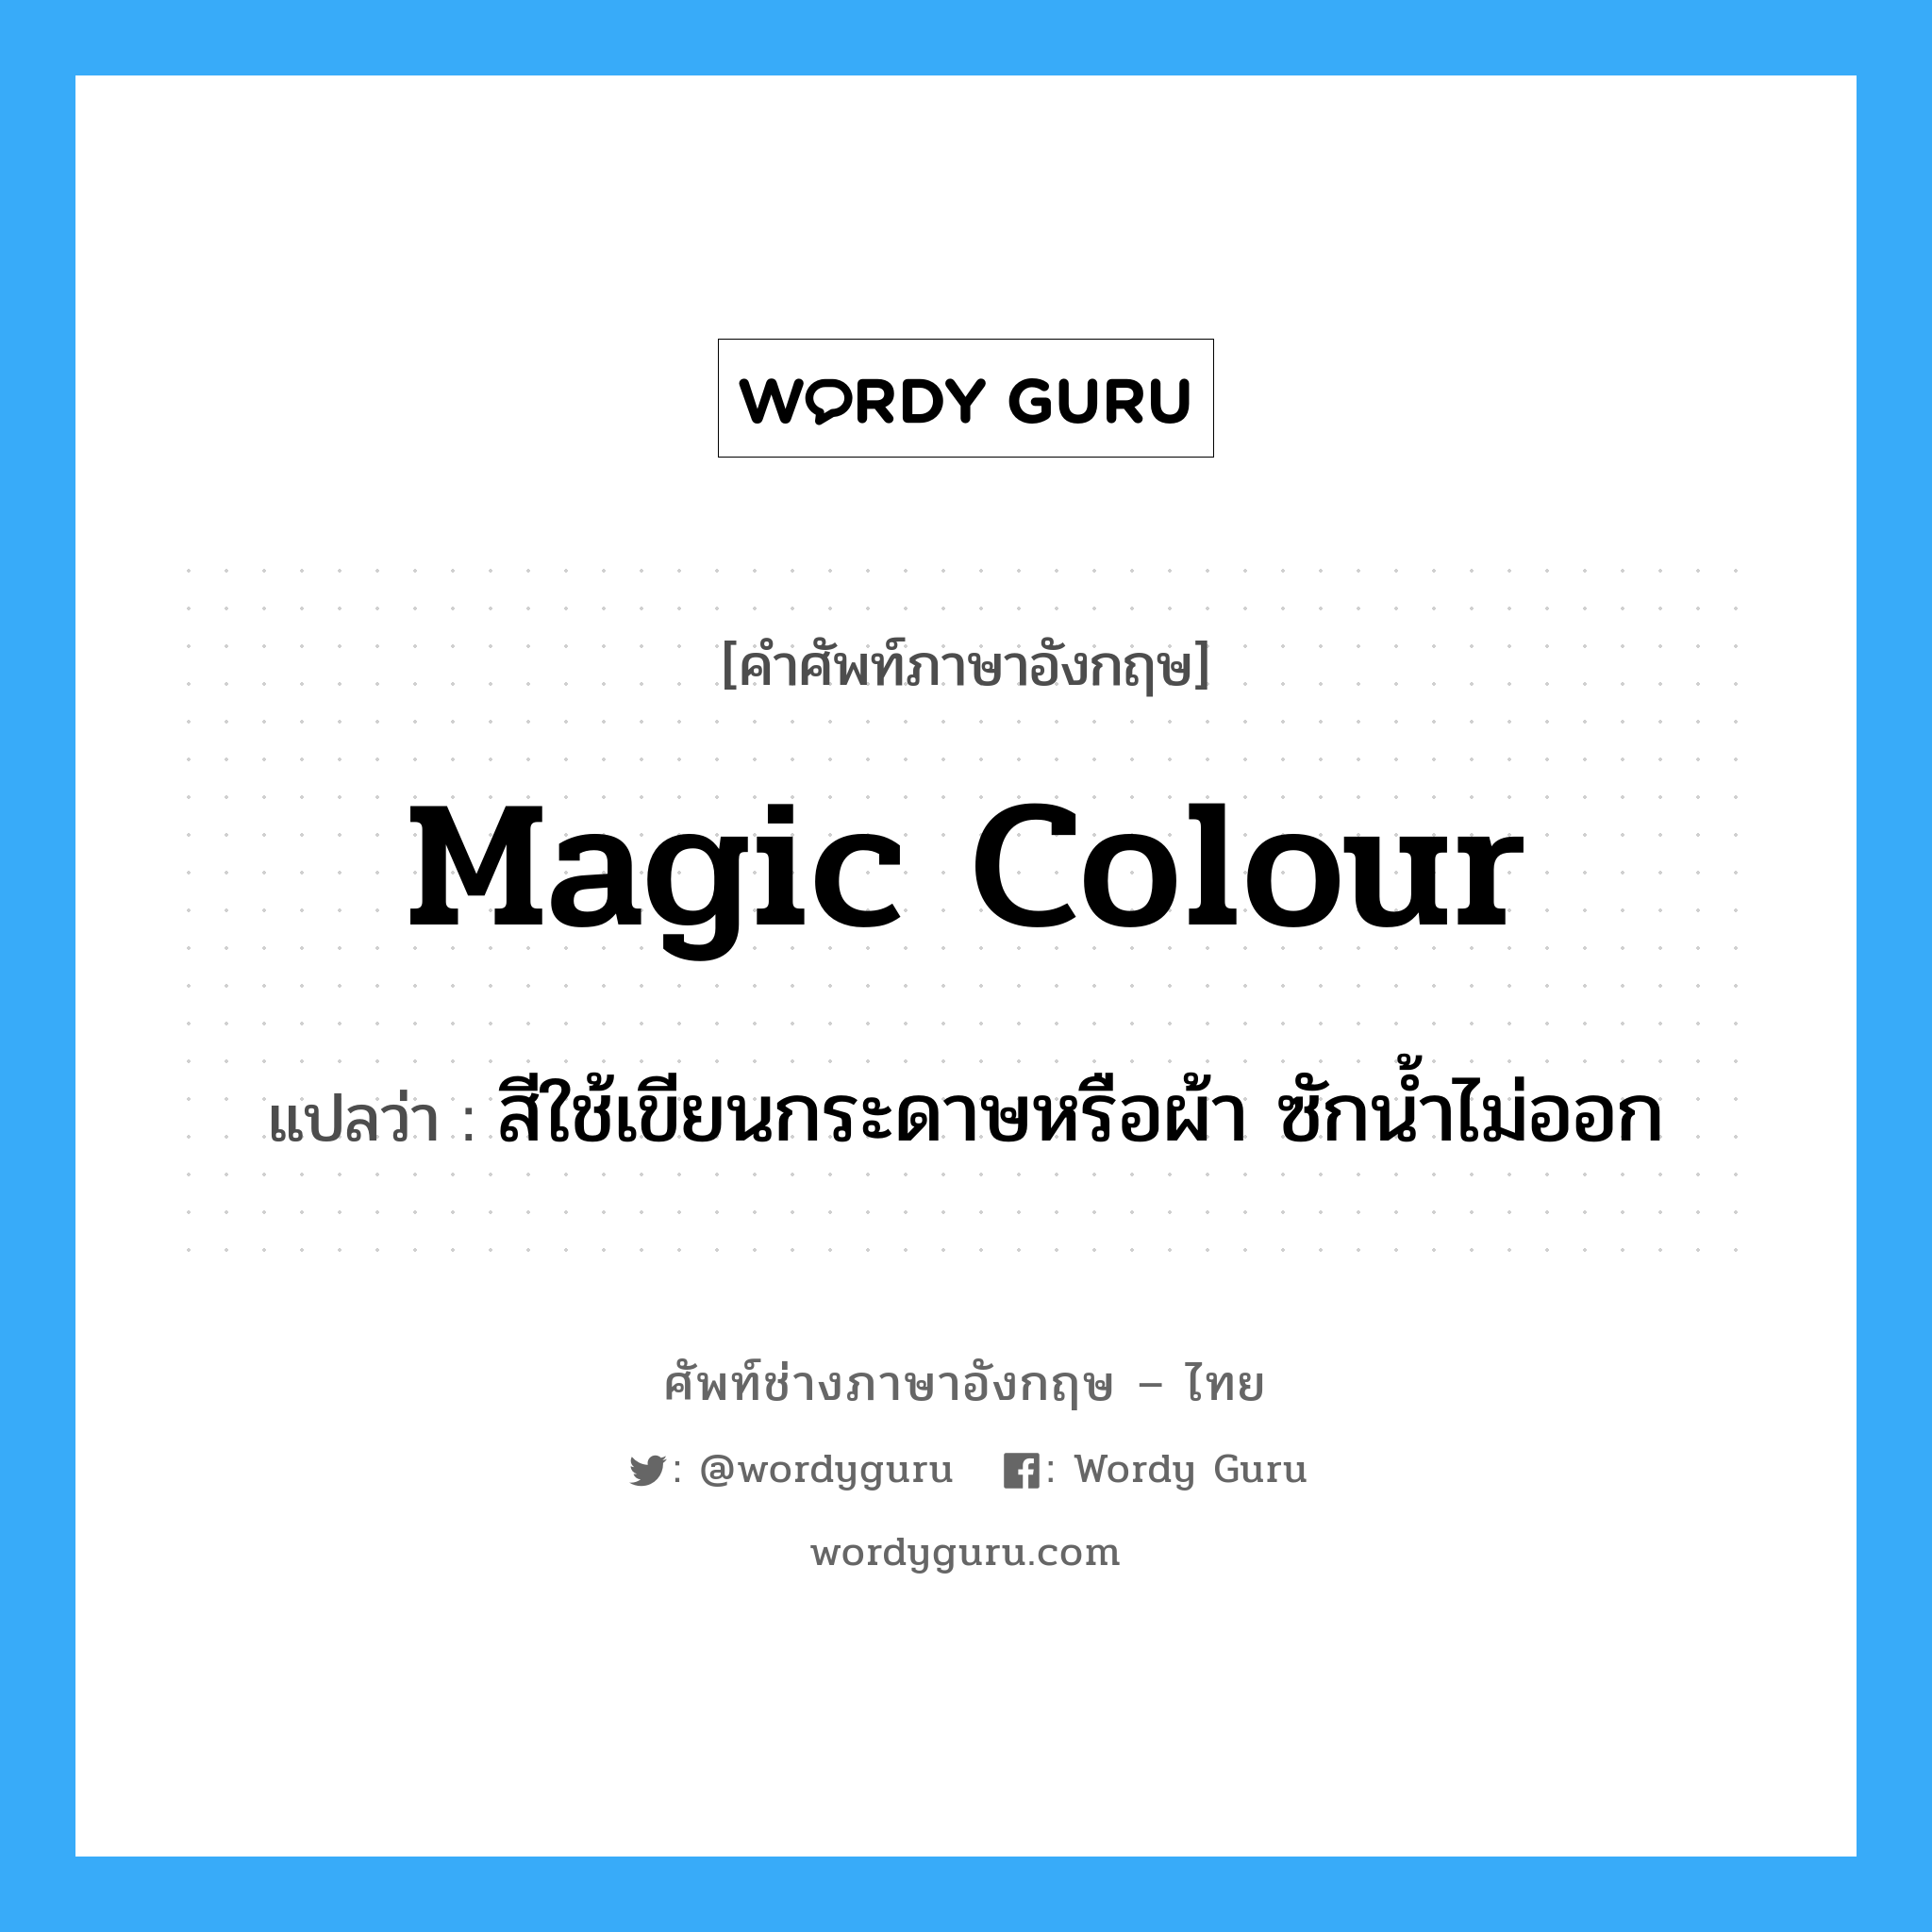 magic colour แปลว่า?, คำศัพท์ช่างภาษาอังกฤษ - ไทย magic colour คำศัพท์ภาษาอังกฤษ magic colour แปลว่า สีใช้เขียนกระดาษหรือผ้า ซักน้ำไม่ออก